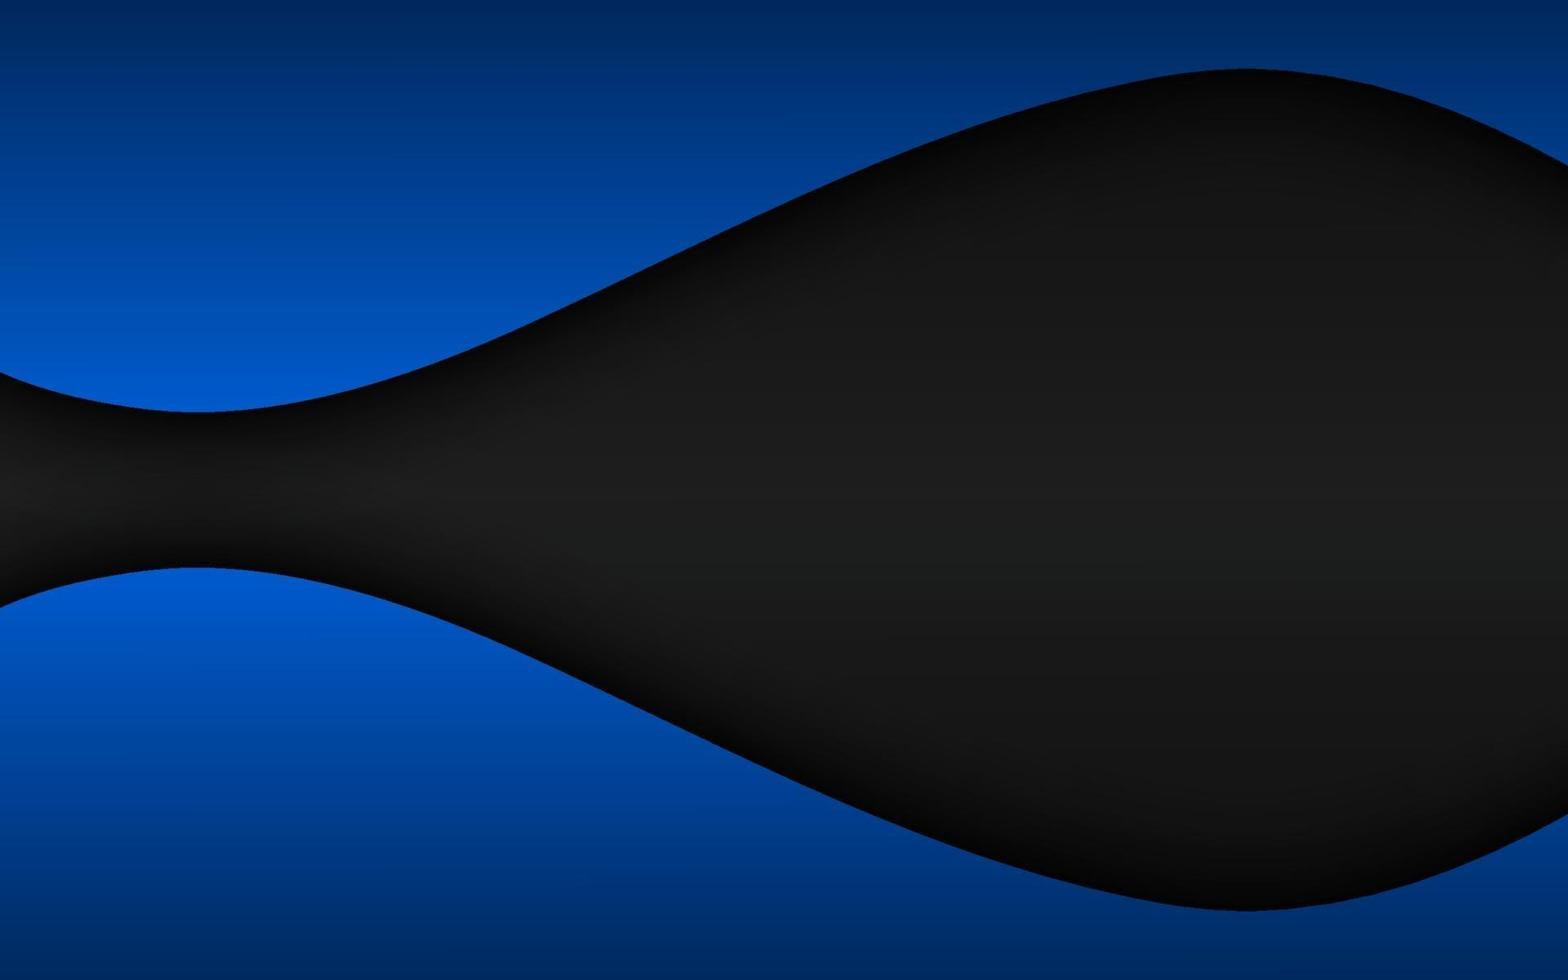 abstrato preto e azul onda vector base com espaço em branco para o seu texto. ilustração vetorial de design corporativo moderno